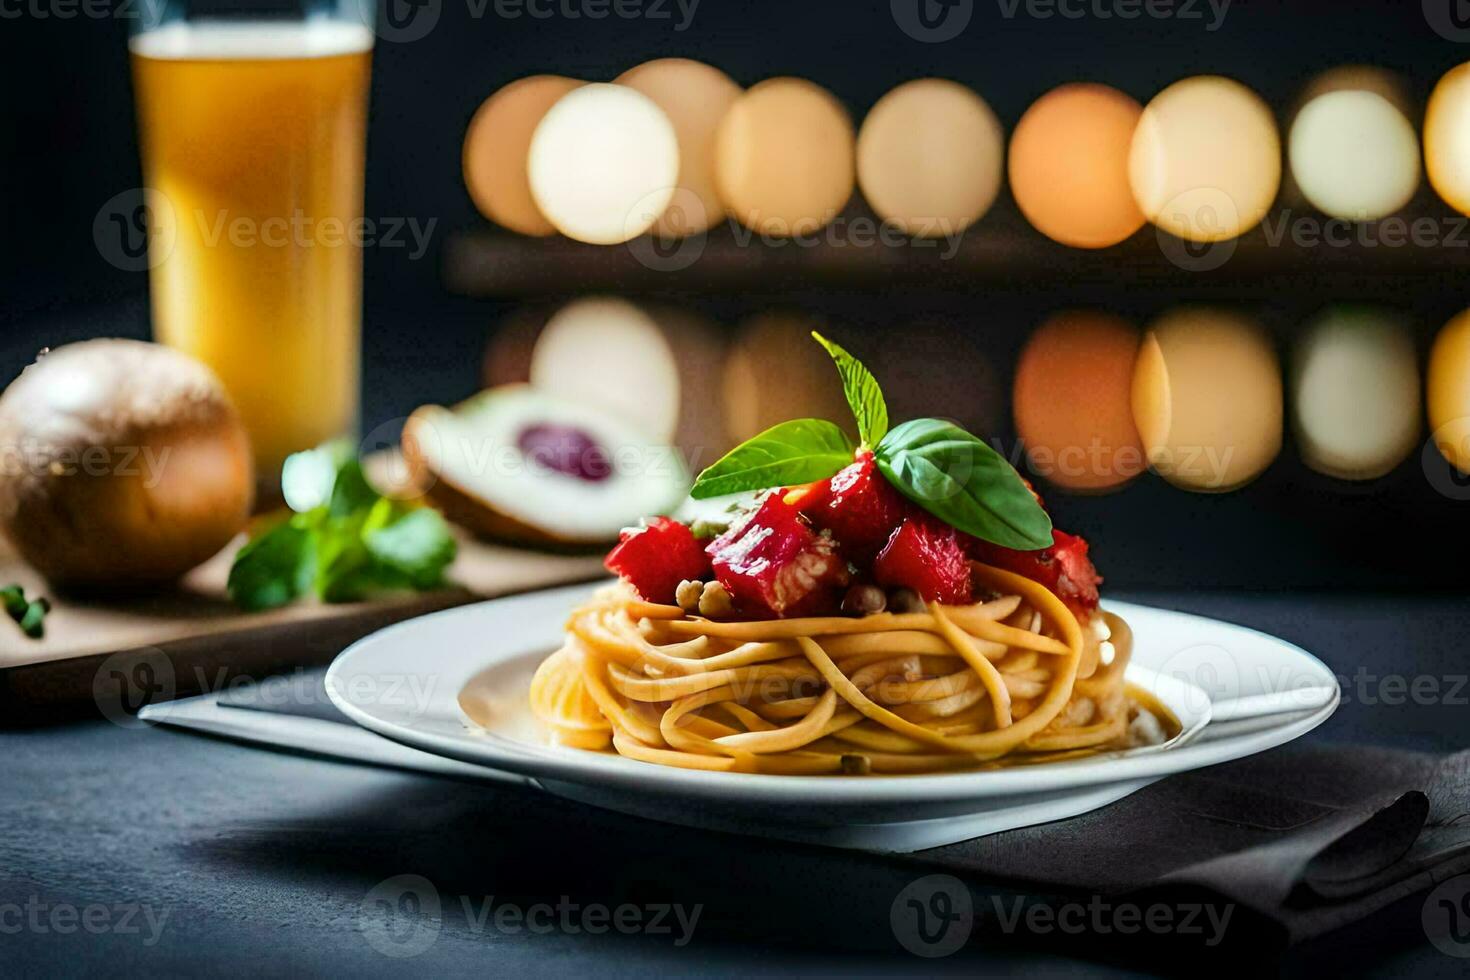 espaguete com tomate e manjericão em uma placa. gerado por IA foto